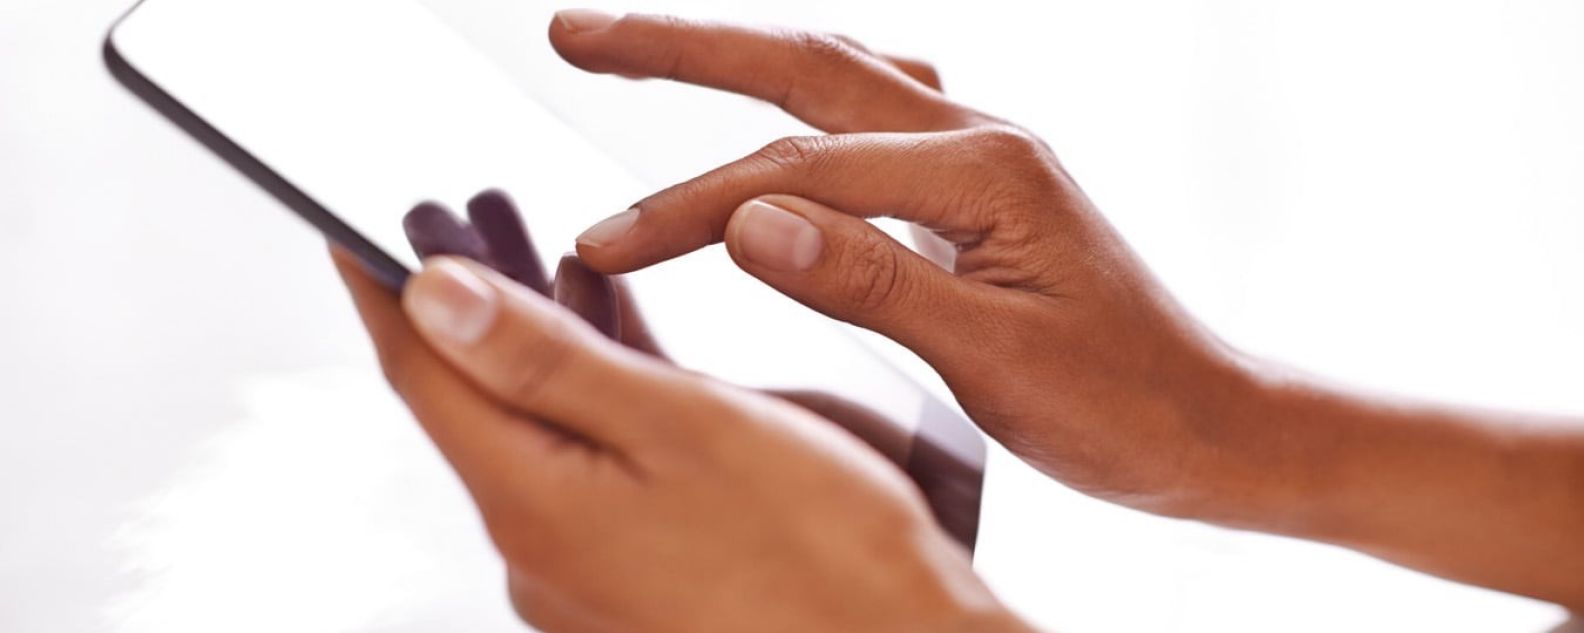 Gros plan sur un doigt appuyé sur l’écran d’une tablette